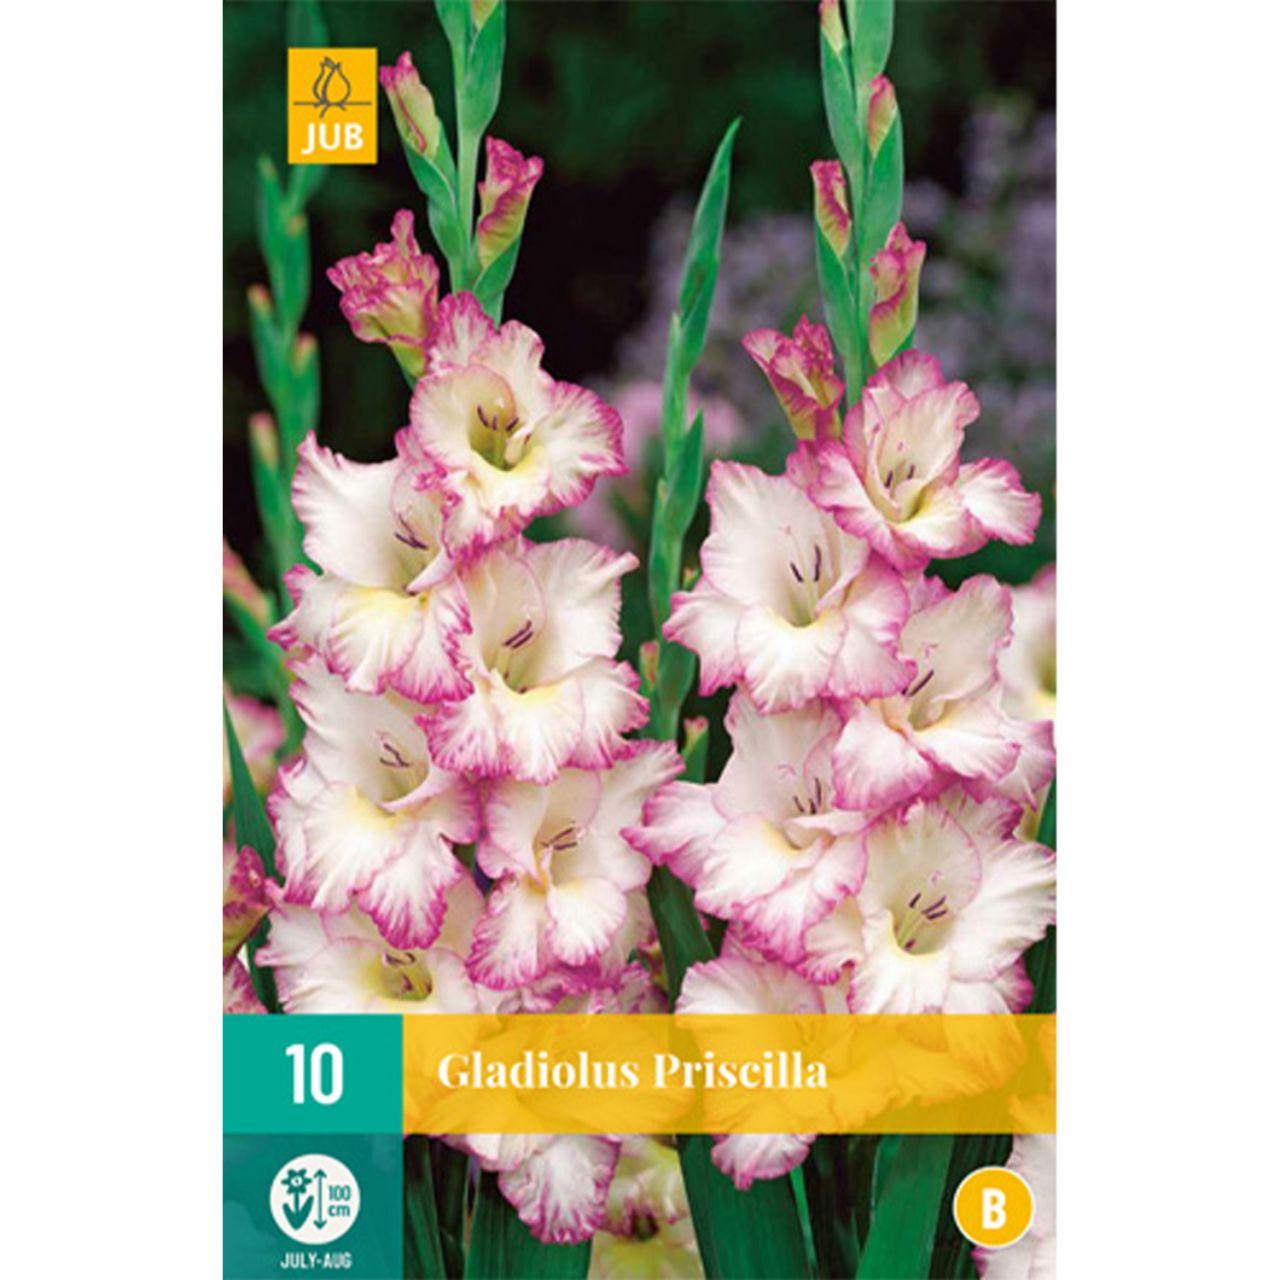 Kategorie <b>Frühlings-Blumenzwiebeln </b> - Gladiole 'Priscilla' - 10 Stück - Gladiolus